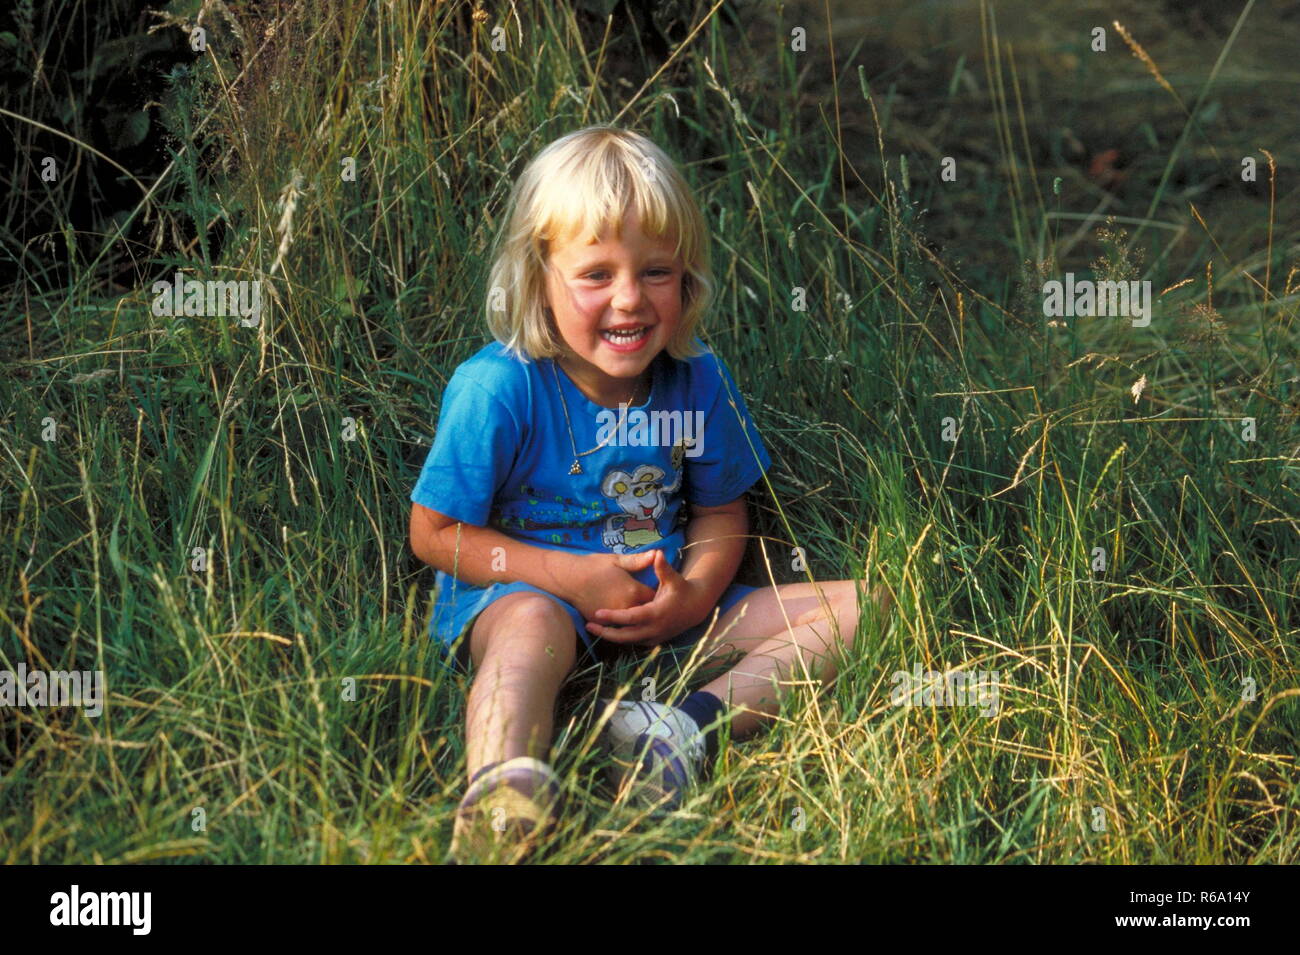 Portrait, blondes Maedchen, 3 Jahre, bekleidet mit blauem T-Shirt, sitzt lachend im hohen gruenen Gras Stock Photo